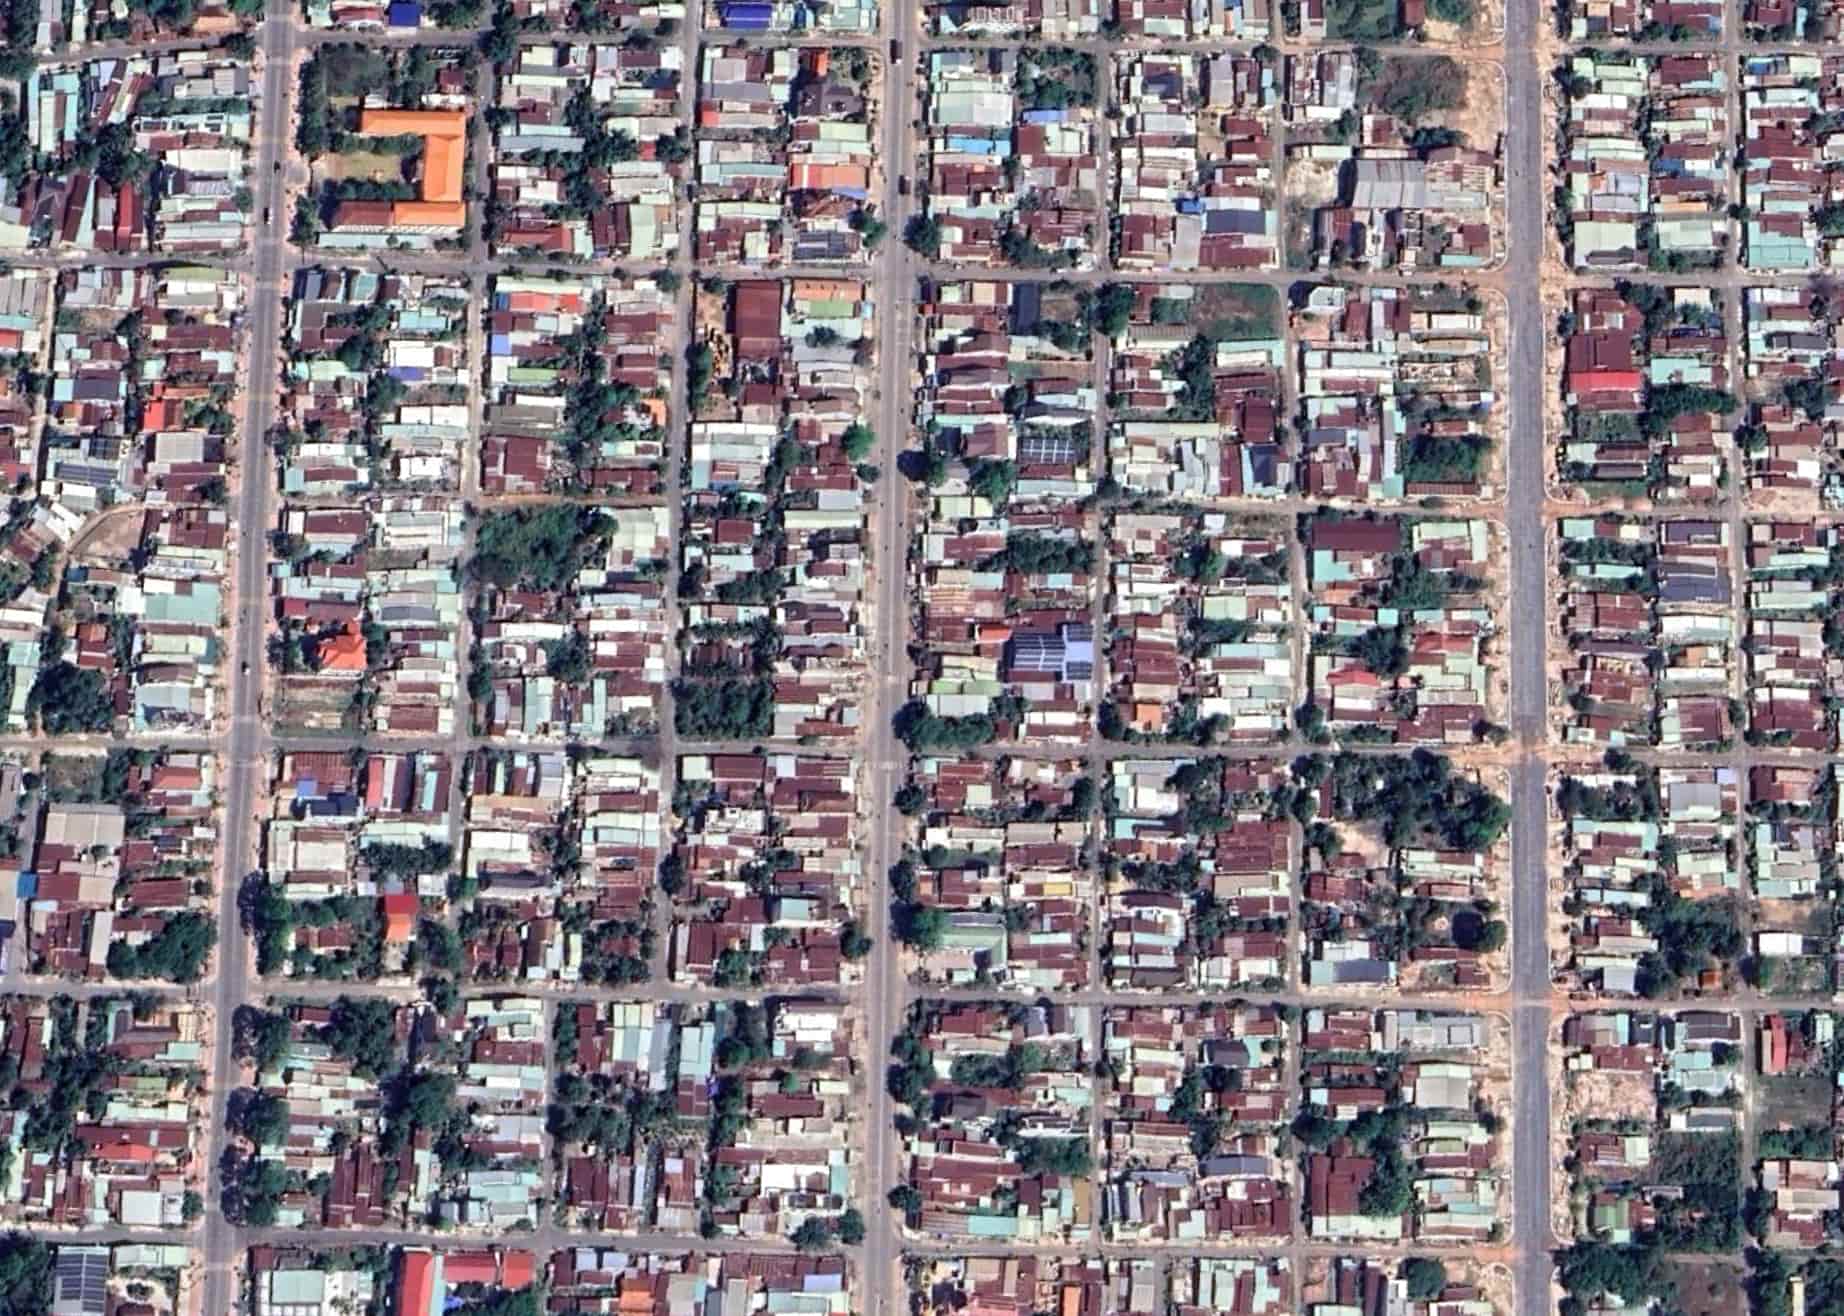 Không chỉ khu vực trung tâm, một số phường phía bắc Hoà Thành (nay đã nhập vào thành phố Tây Ninh) cũng có kiểu quy hoạch tương tự. Và những khu vực được “thiết kế sẵn" này gần như được giữ nguyên trong đồ án thiết kế thành phố 20 năm trước.